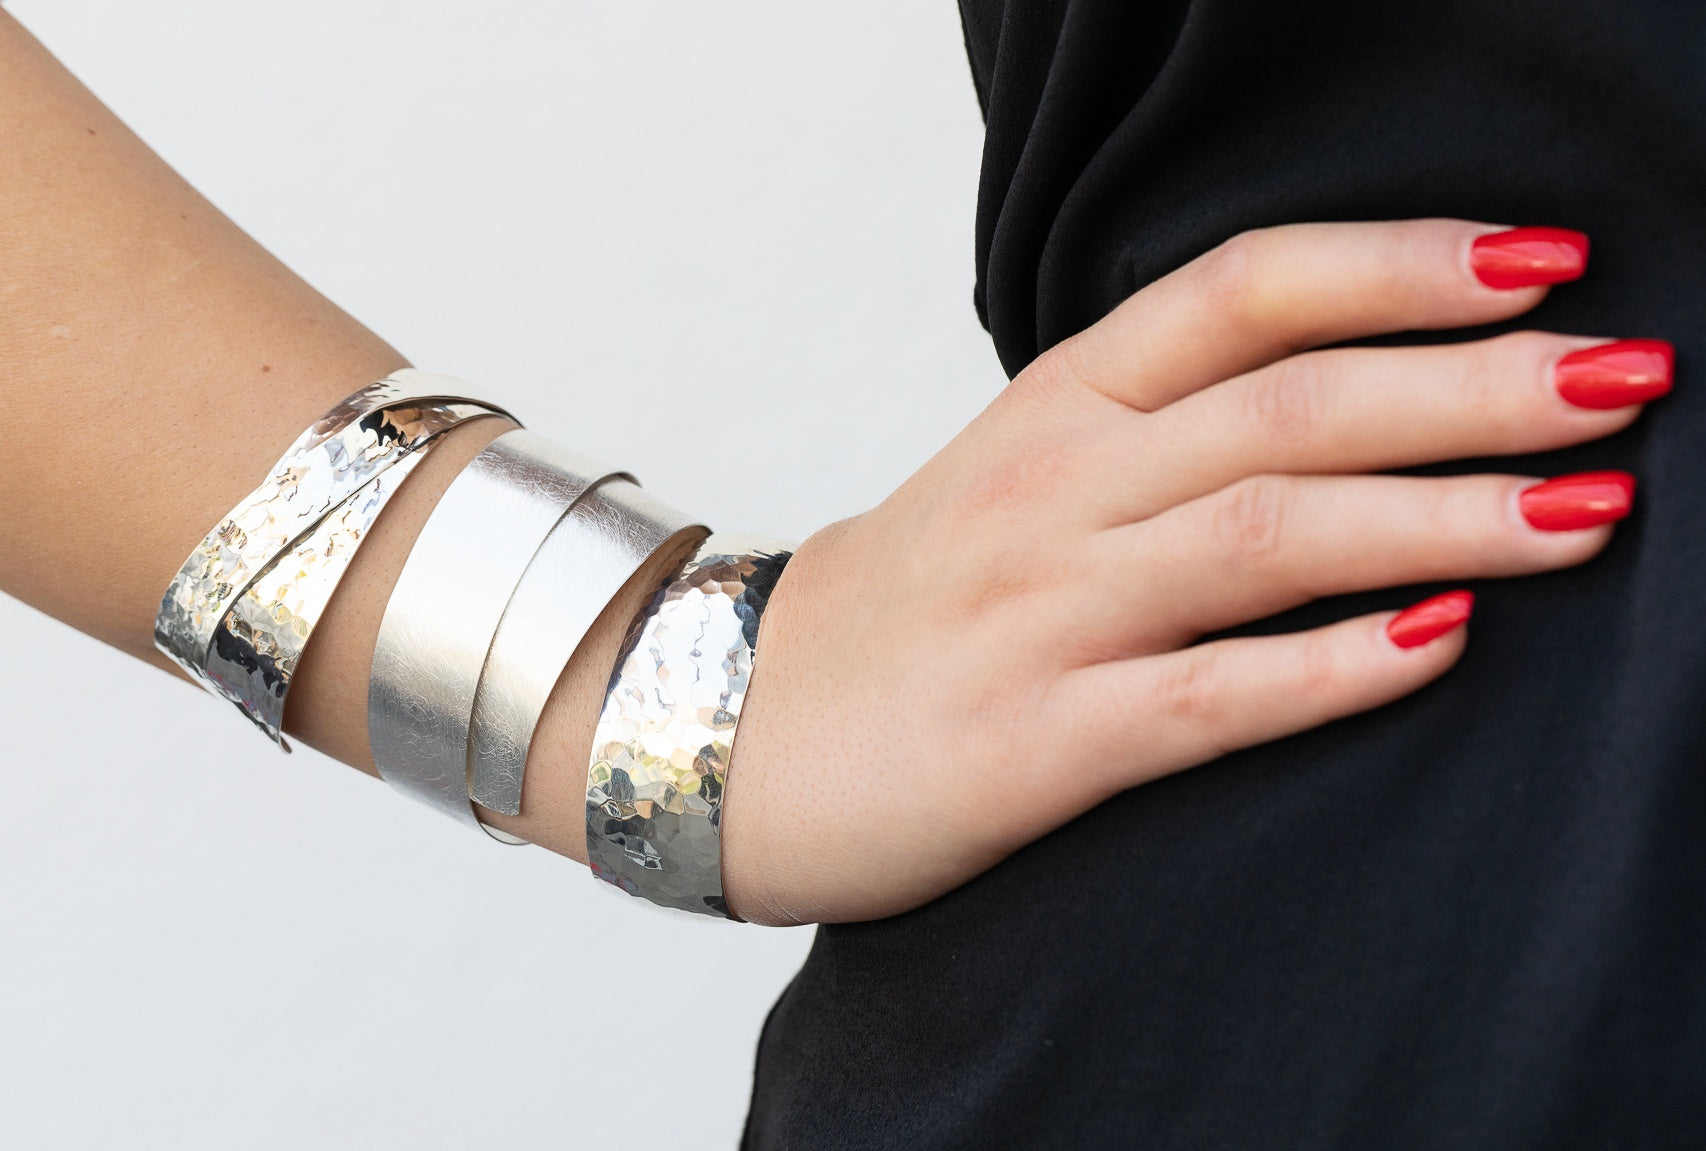 Silberner Armreif mit gebürsteter Oberfläche am Handgelenk getragen. Der Armreif ist schmal und spiralförmig.